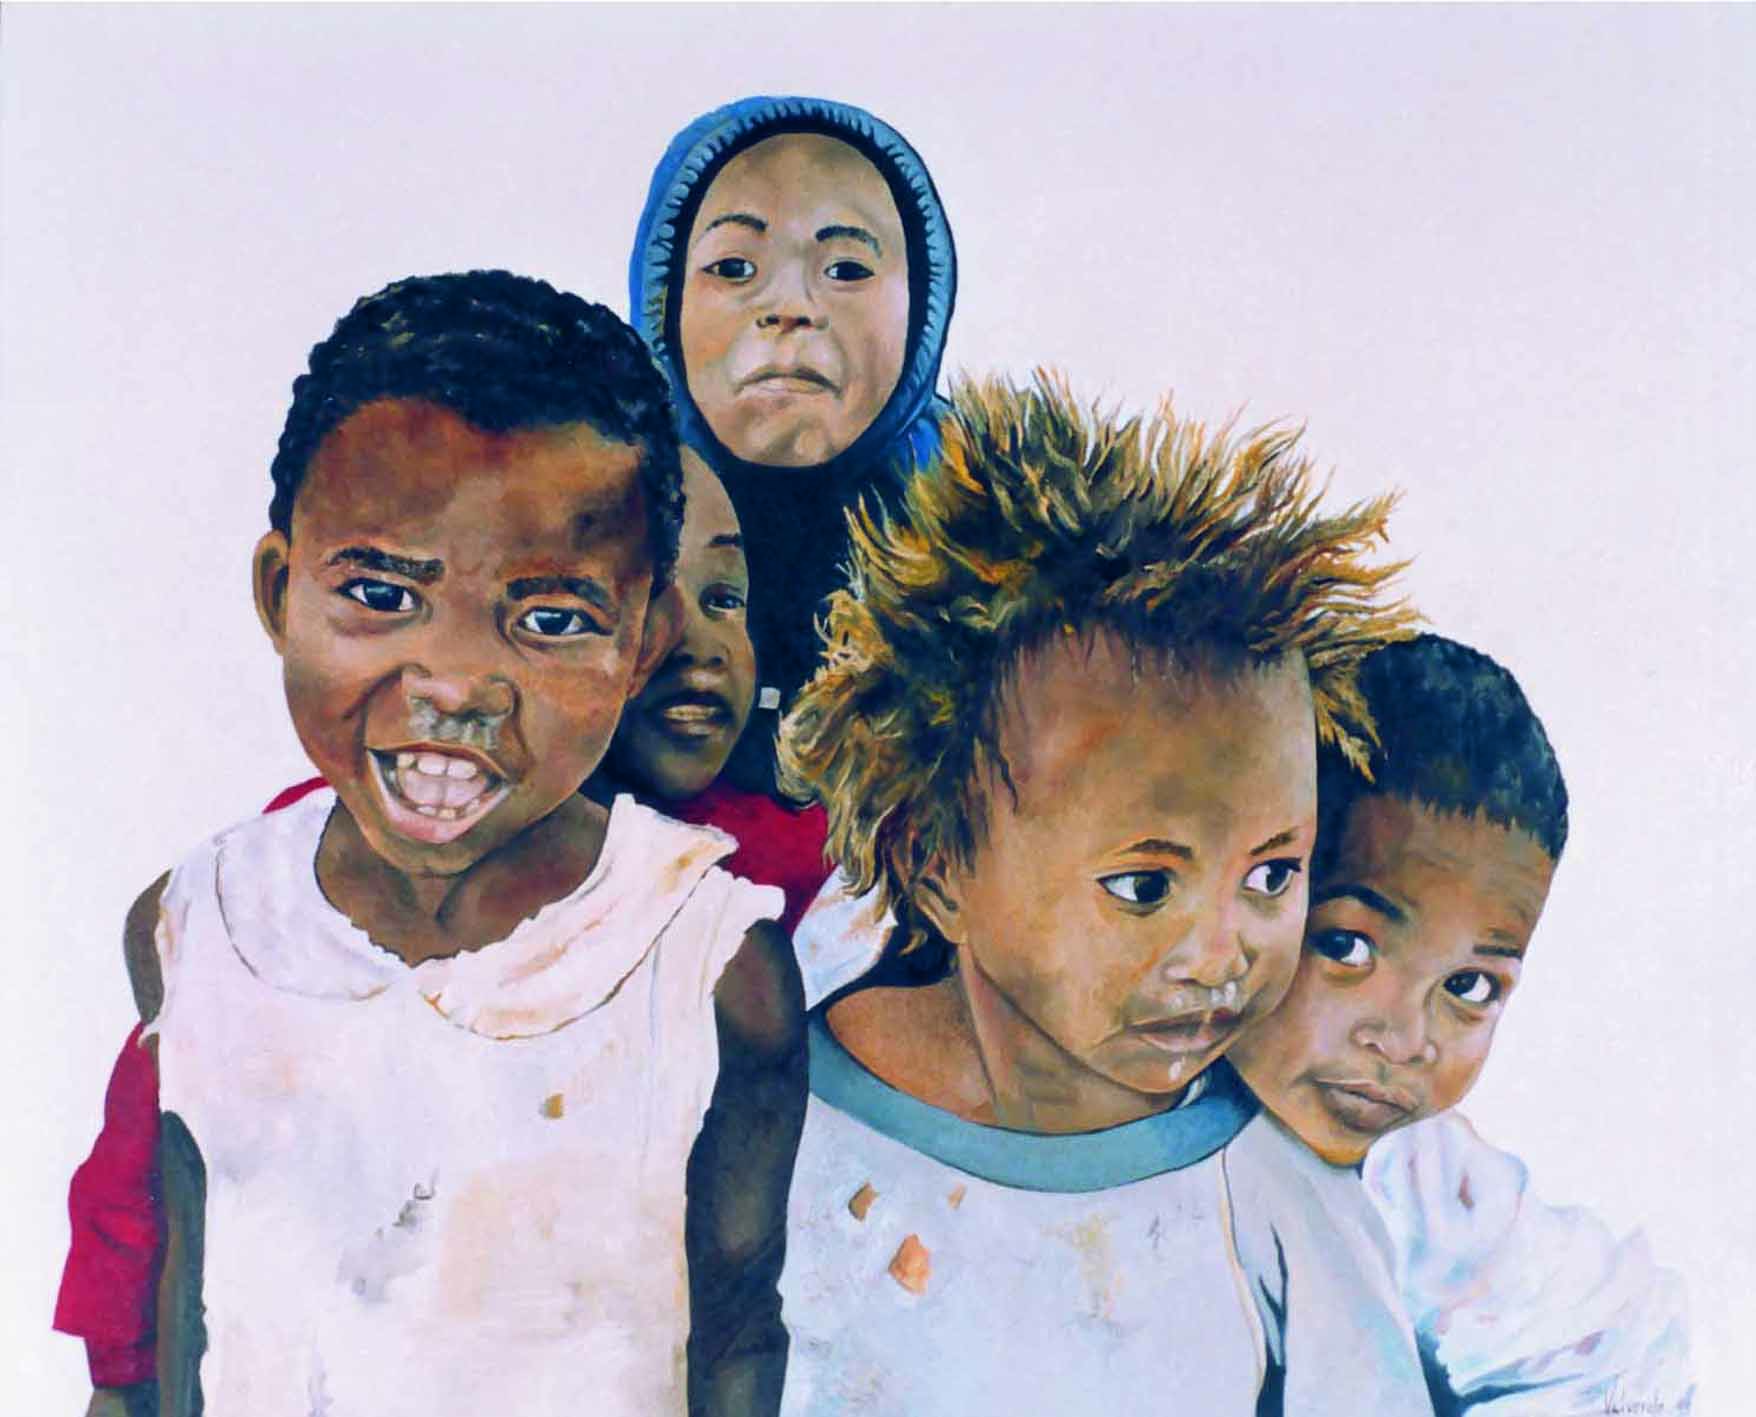 nens Madagascar 01